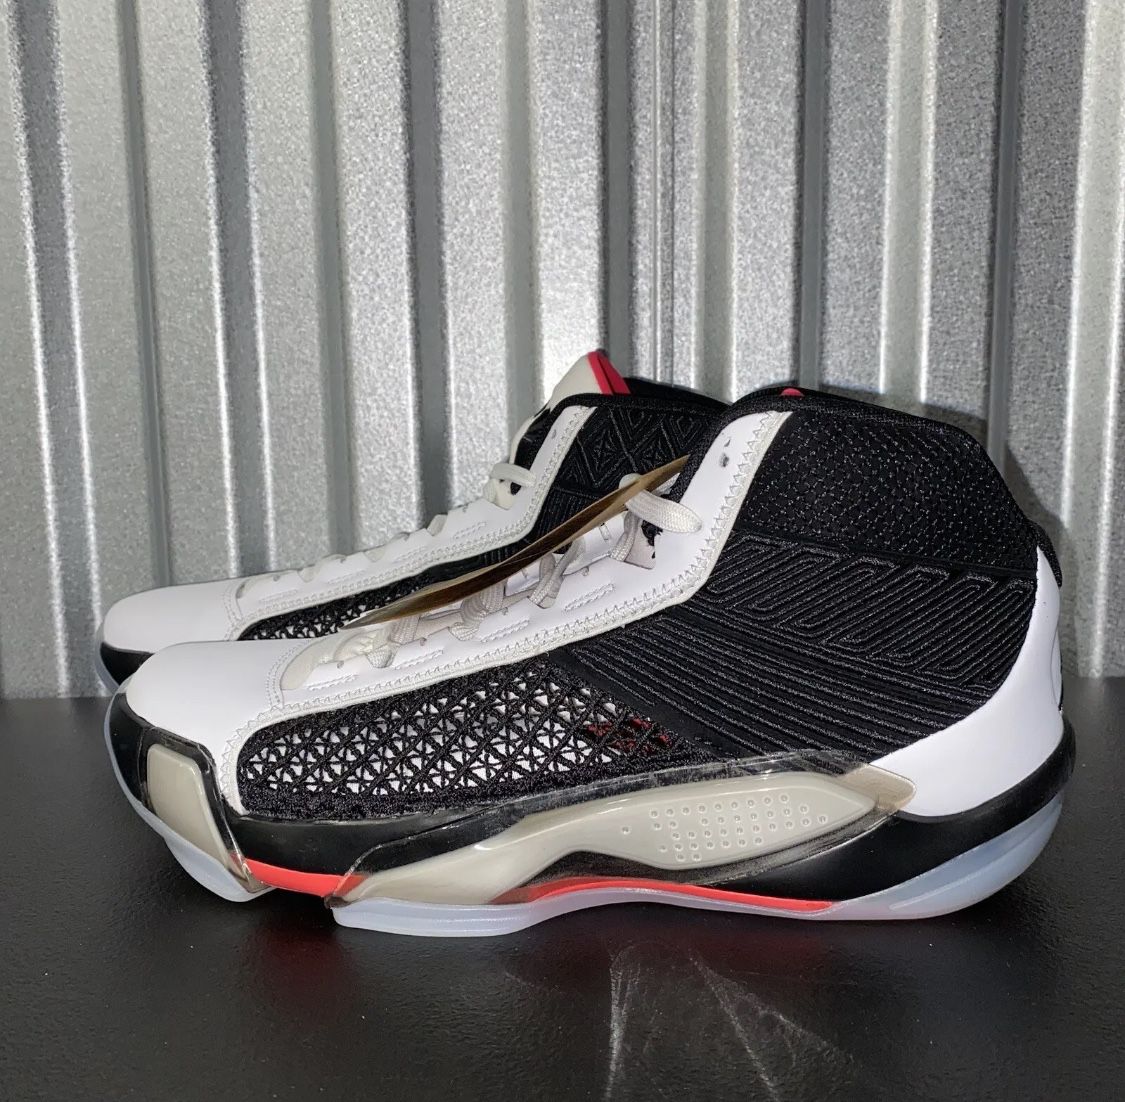 Nike Air Jordan 38 XXXVIII Black Basketball Shoes DZ3356-106 Men's Size 13 New